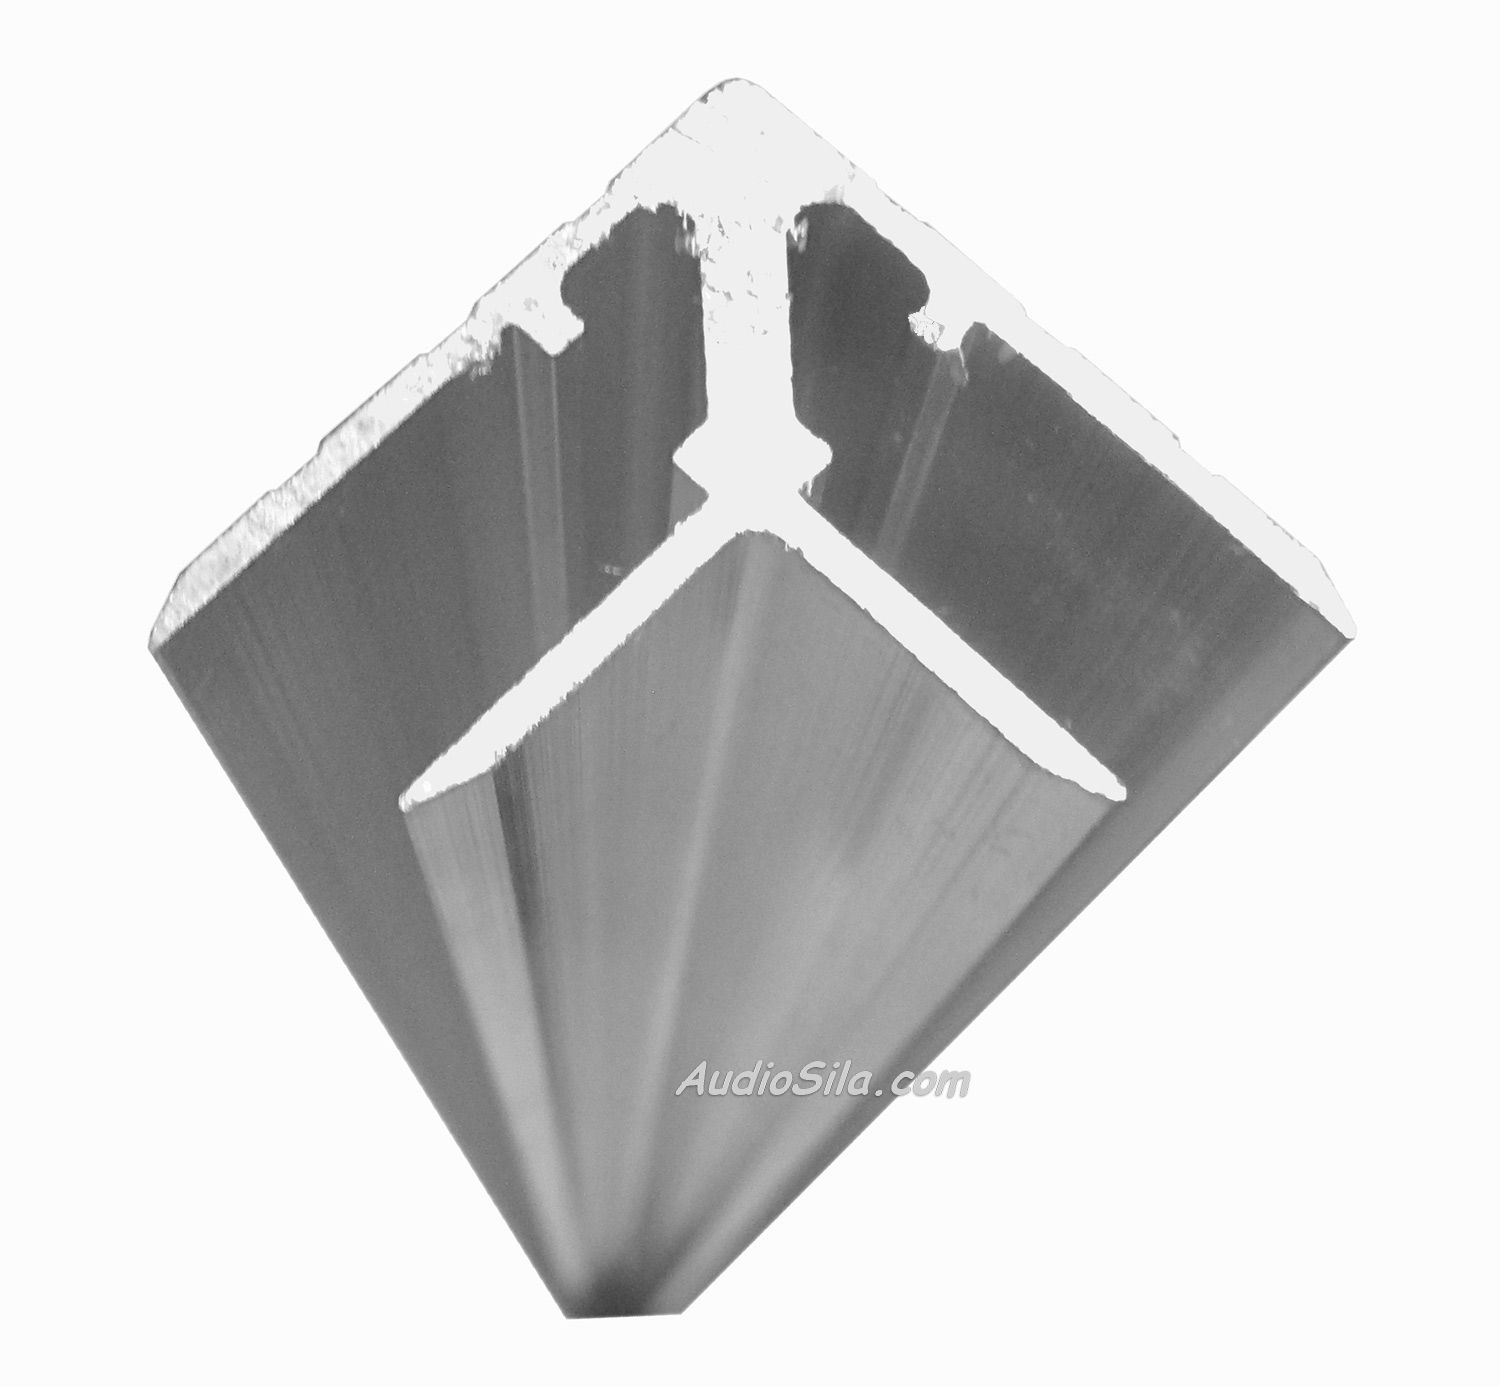 алюминиевый профиль для крепления стеновых панелей мдф